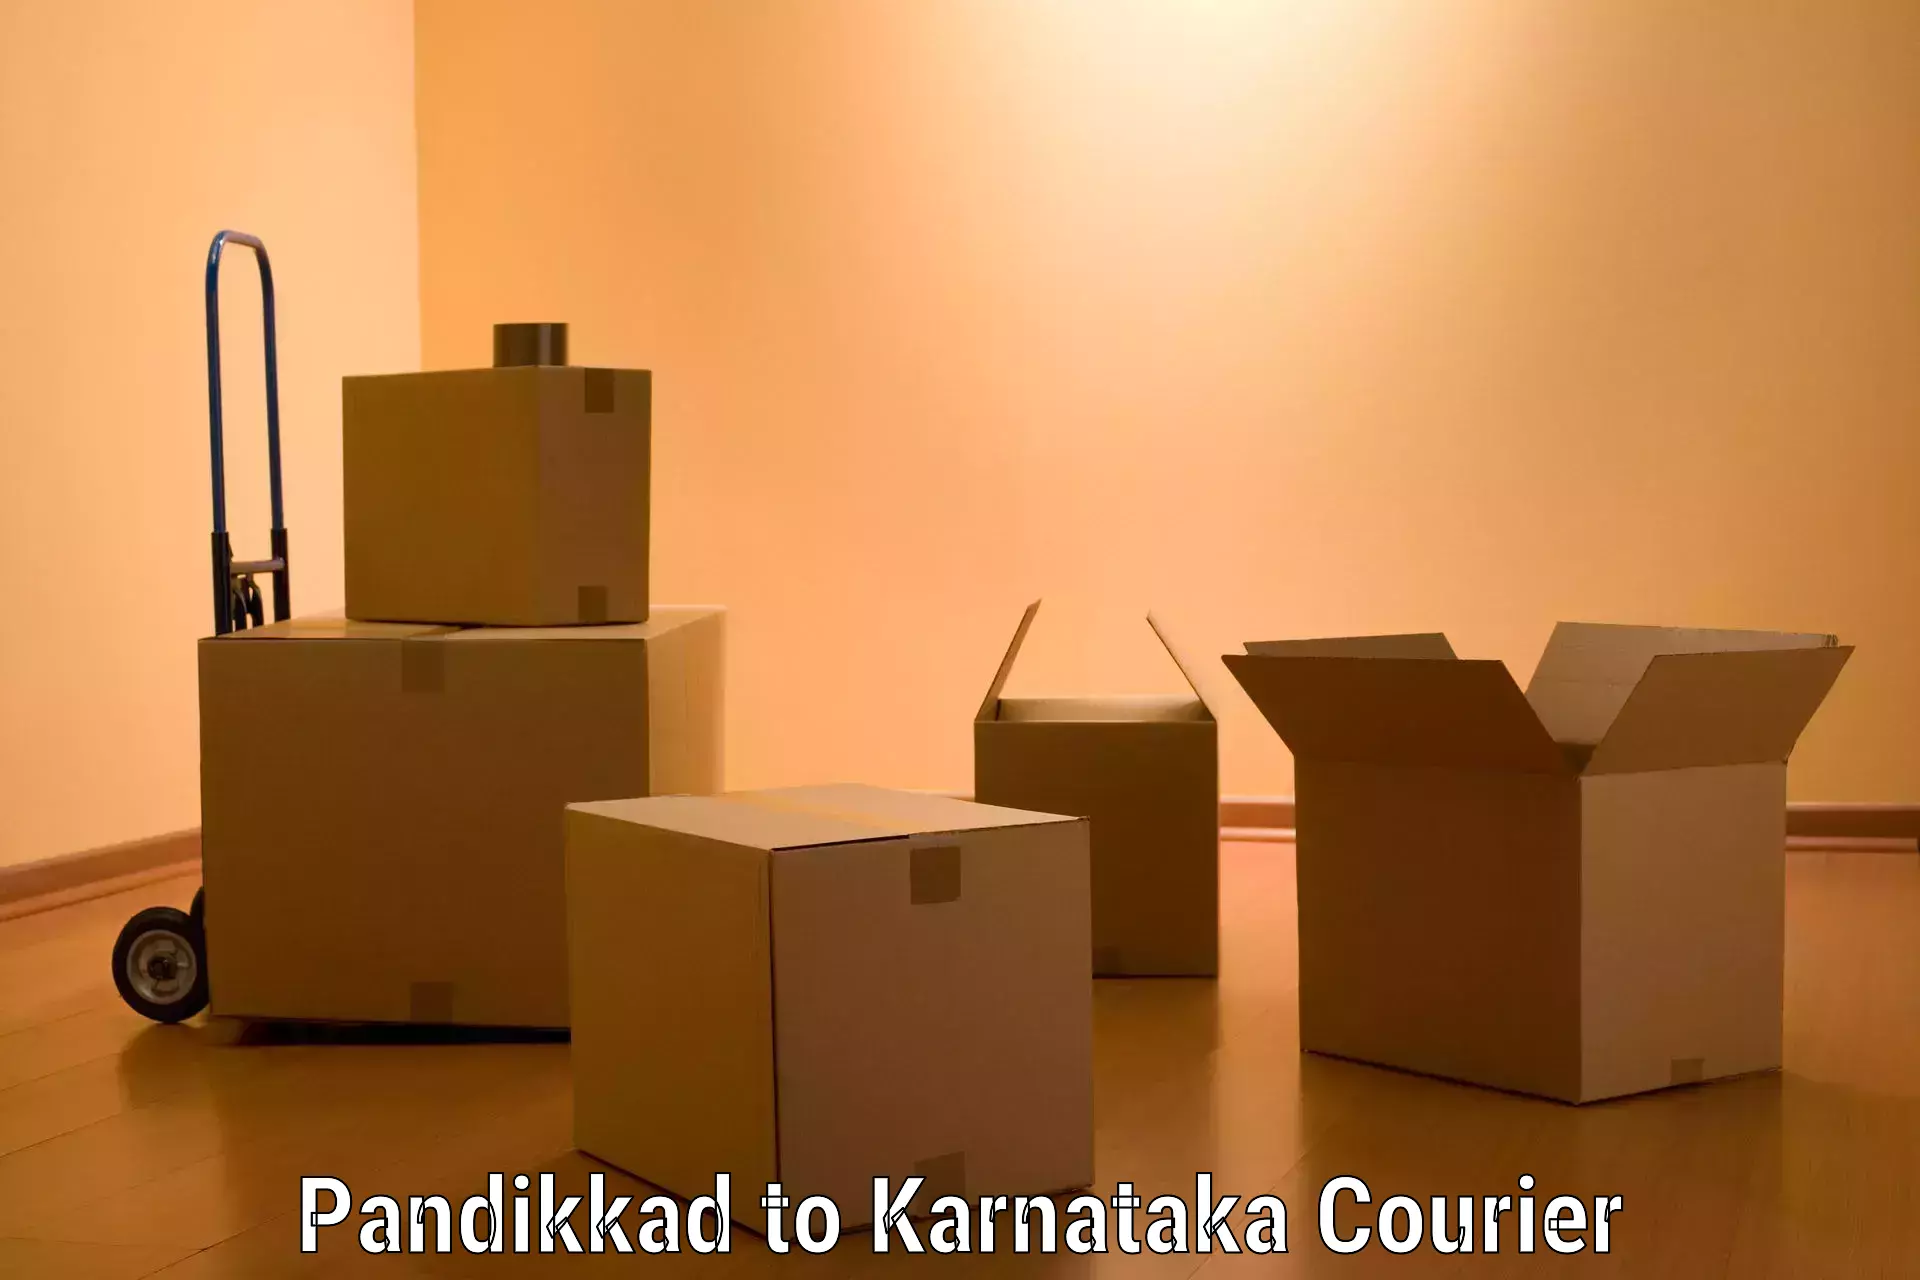 Furniture logistics in Pandikkad to Karnataka